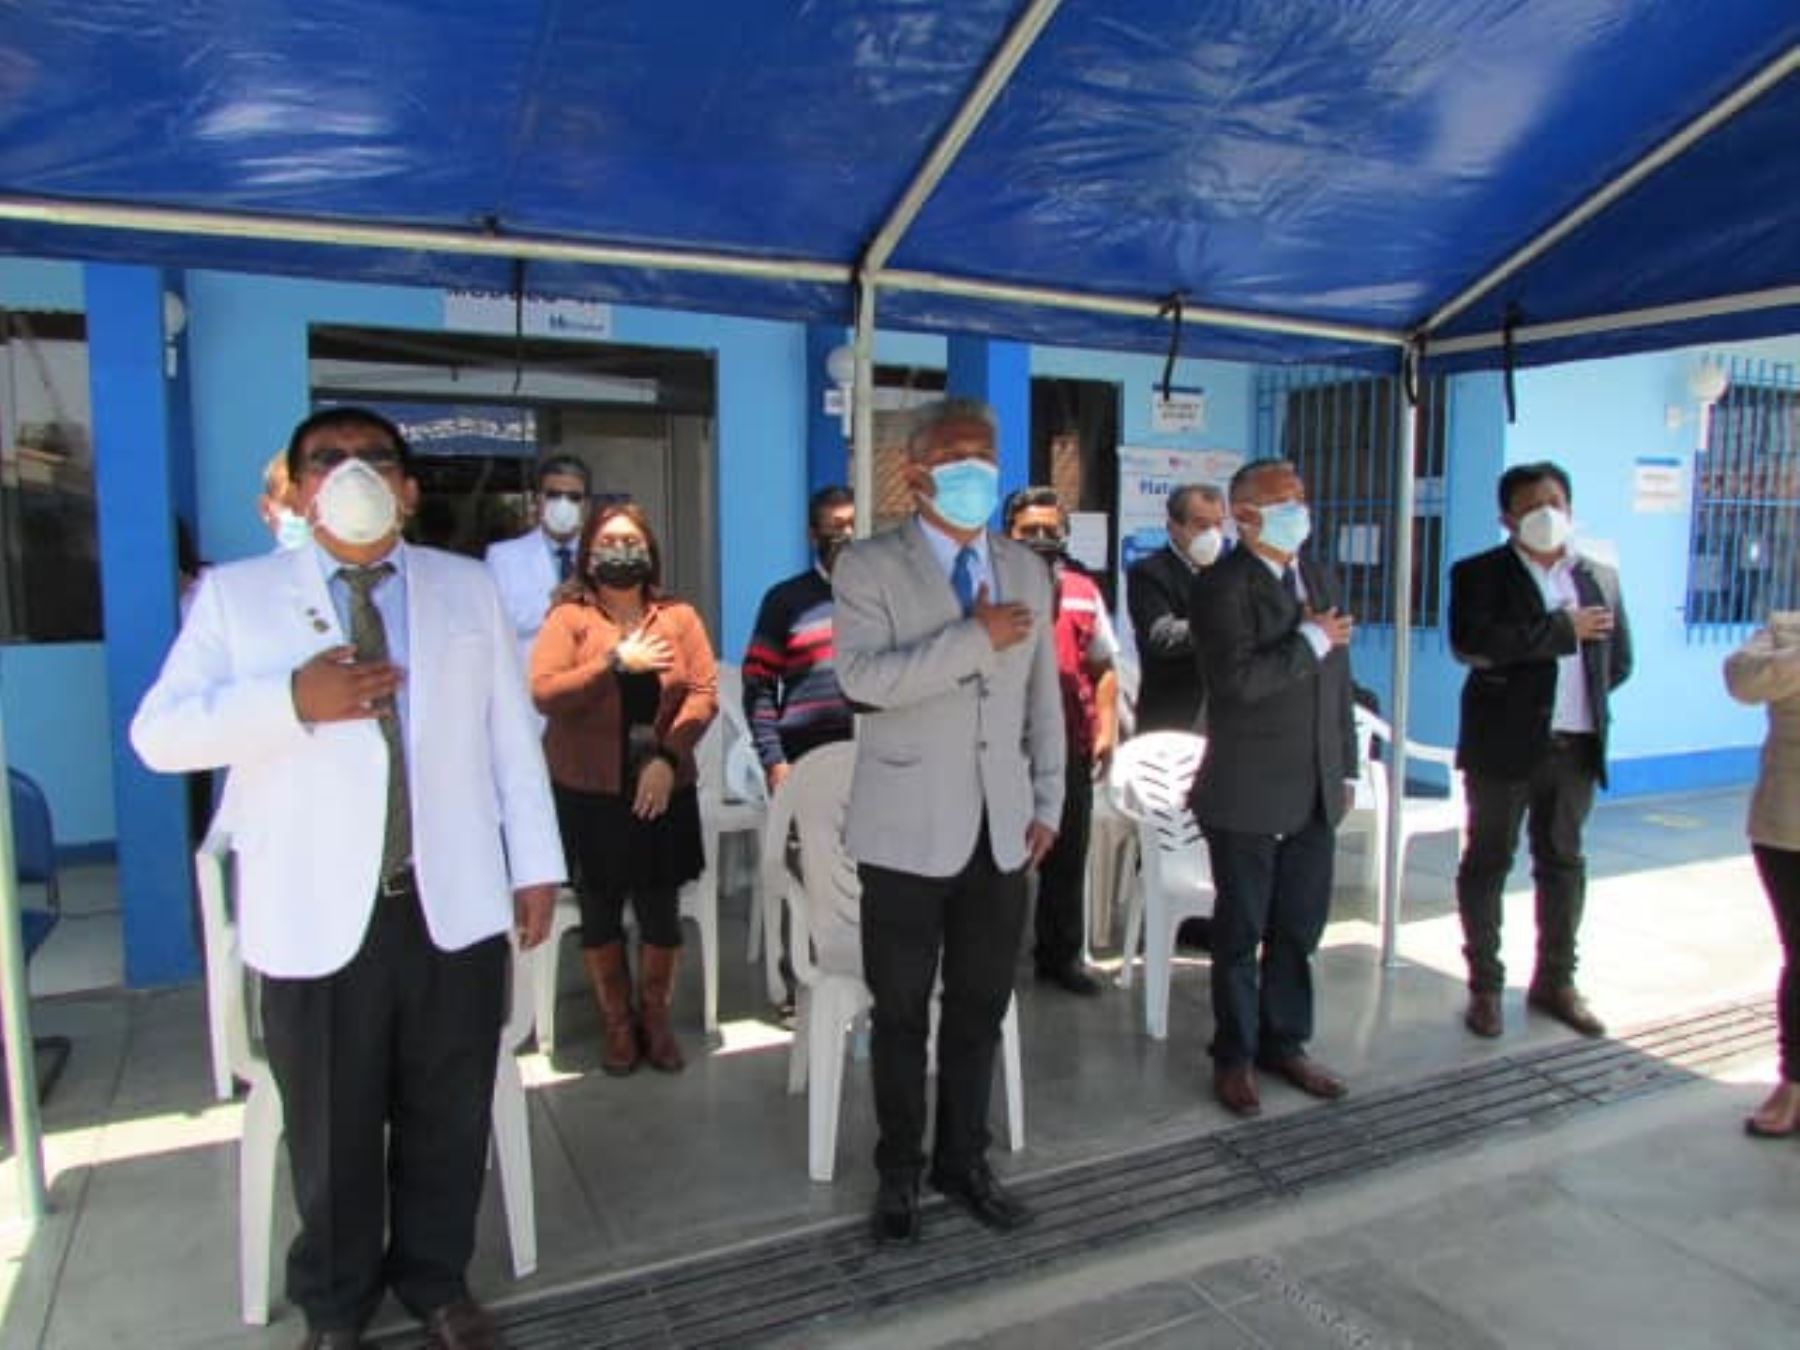 EsSalud Áncash rindió homenaje a los médicos y trabajadores fallecidos por la pandemia de covid-19 en el distrito de Coishco, provincia del Santa. ANDINA/Difusión